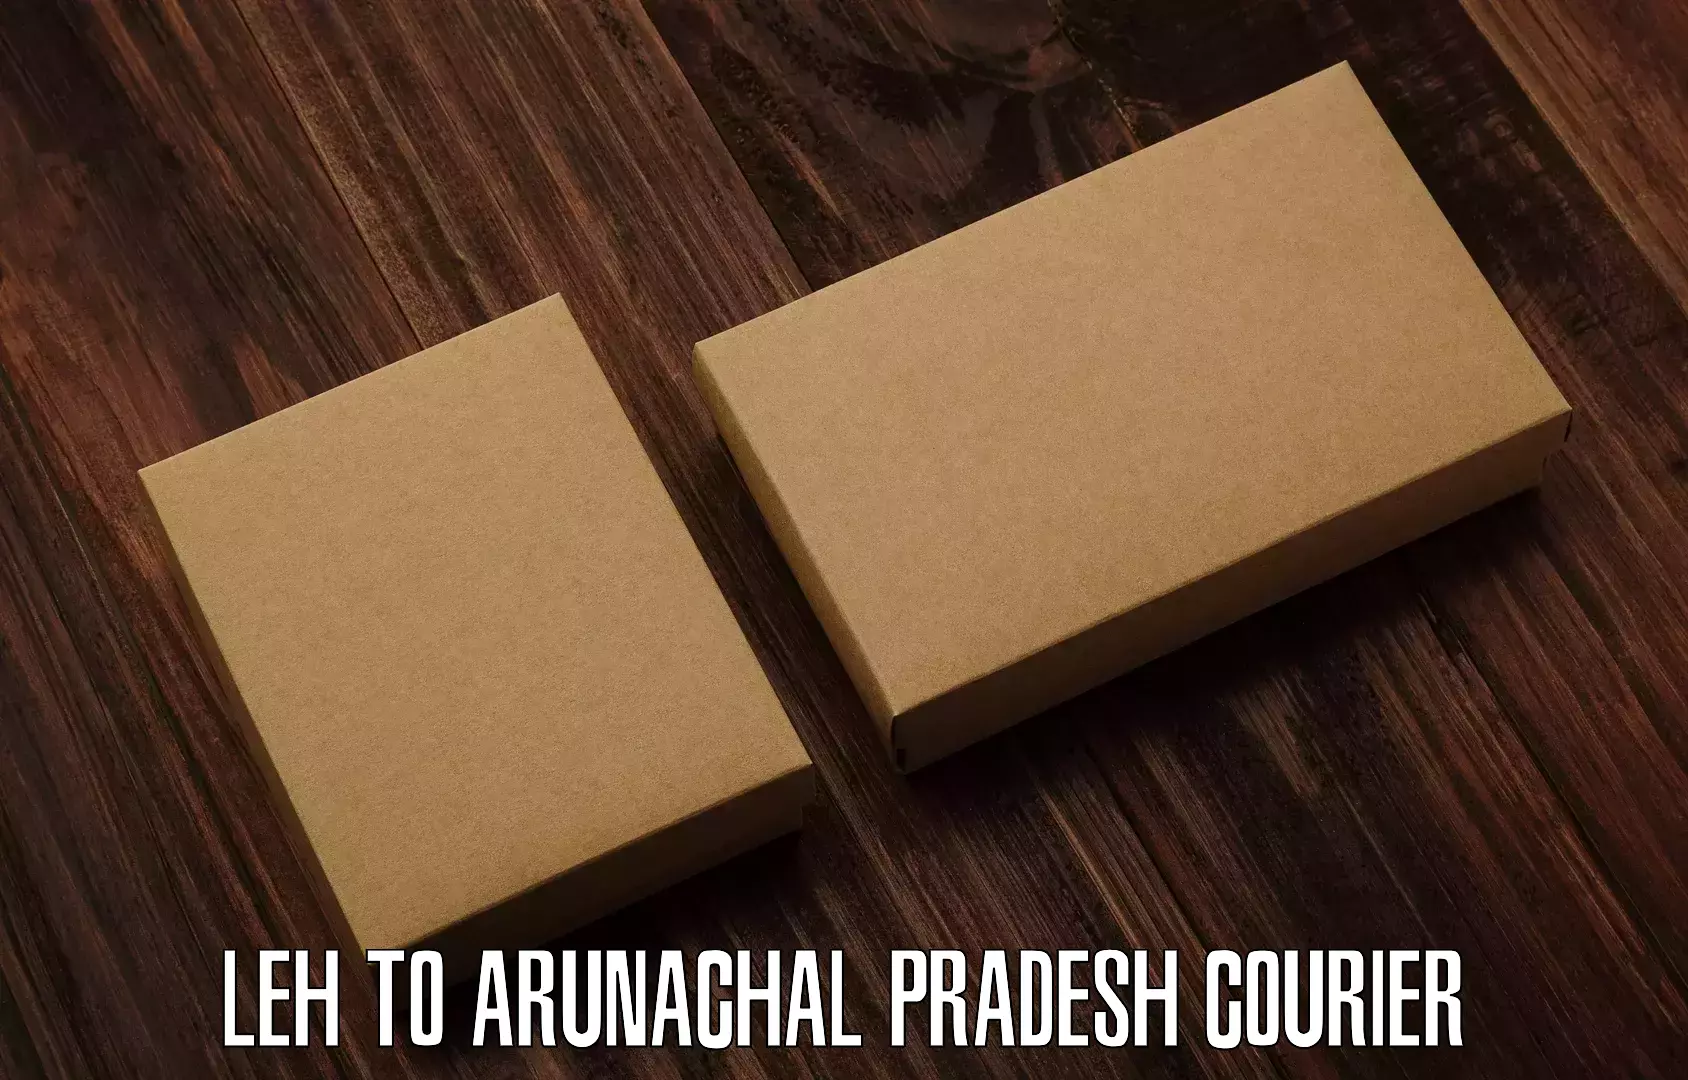 High-speed parcel service Leh to Arunachal Pradesh